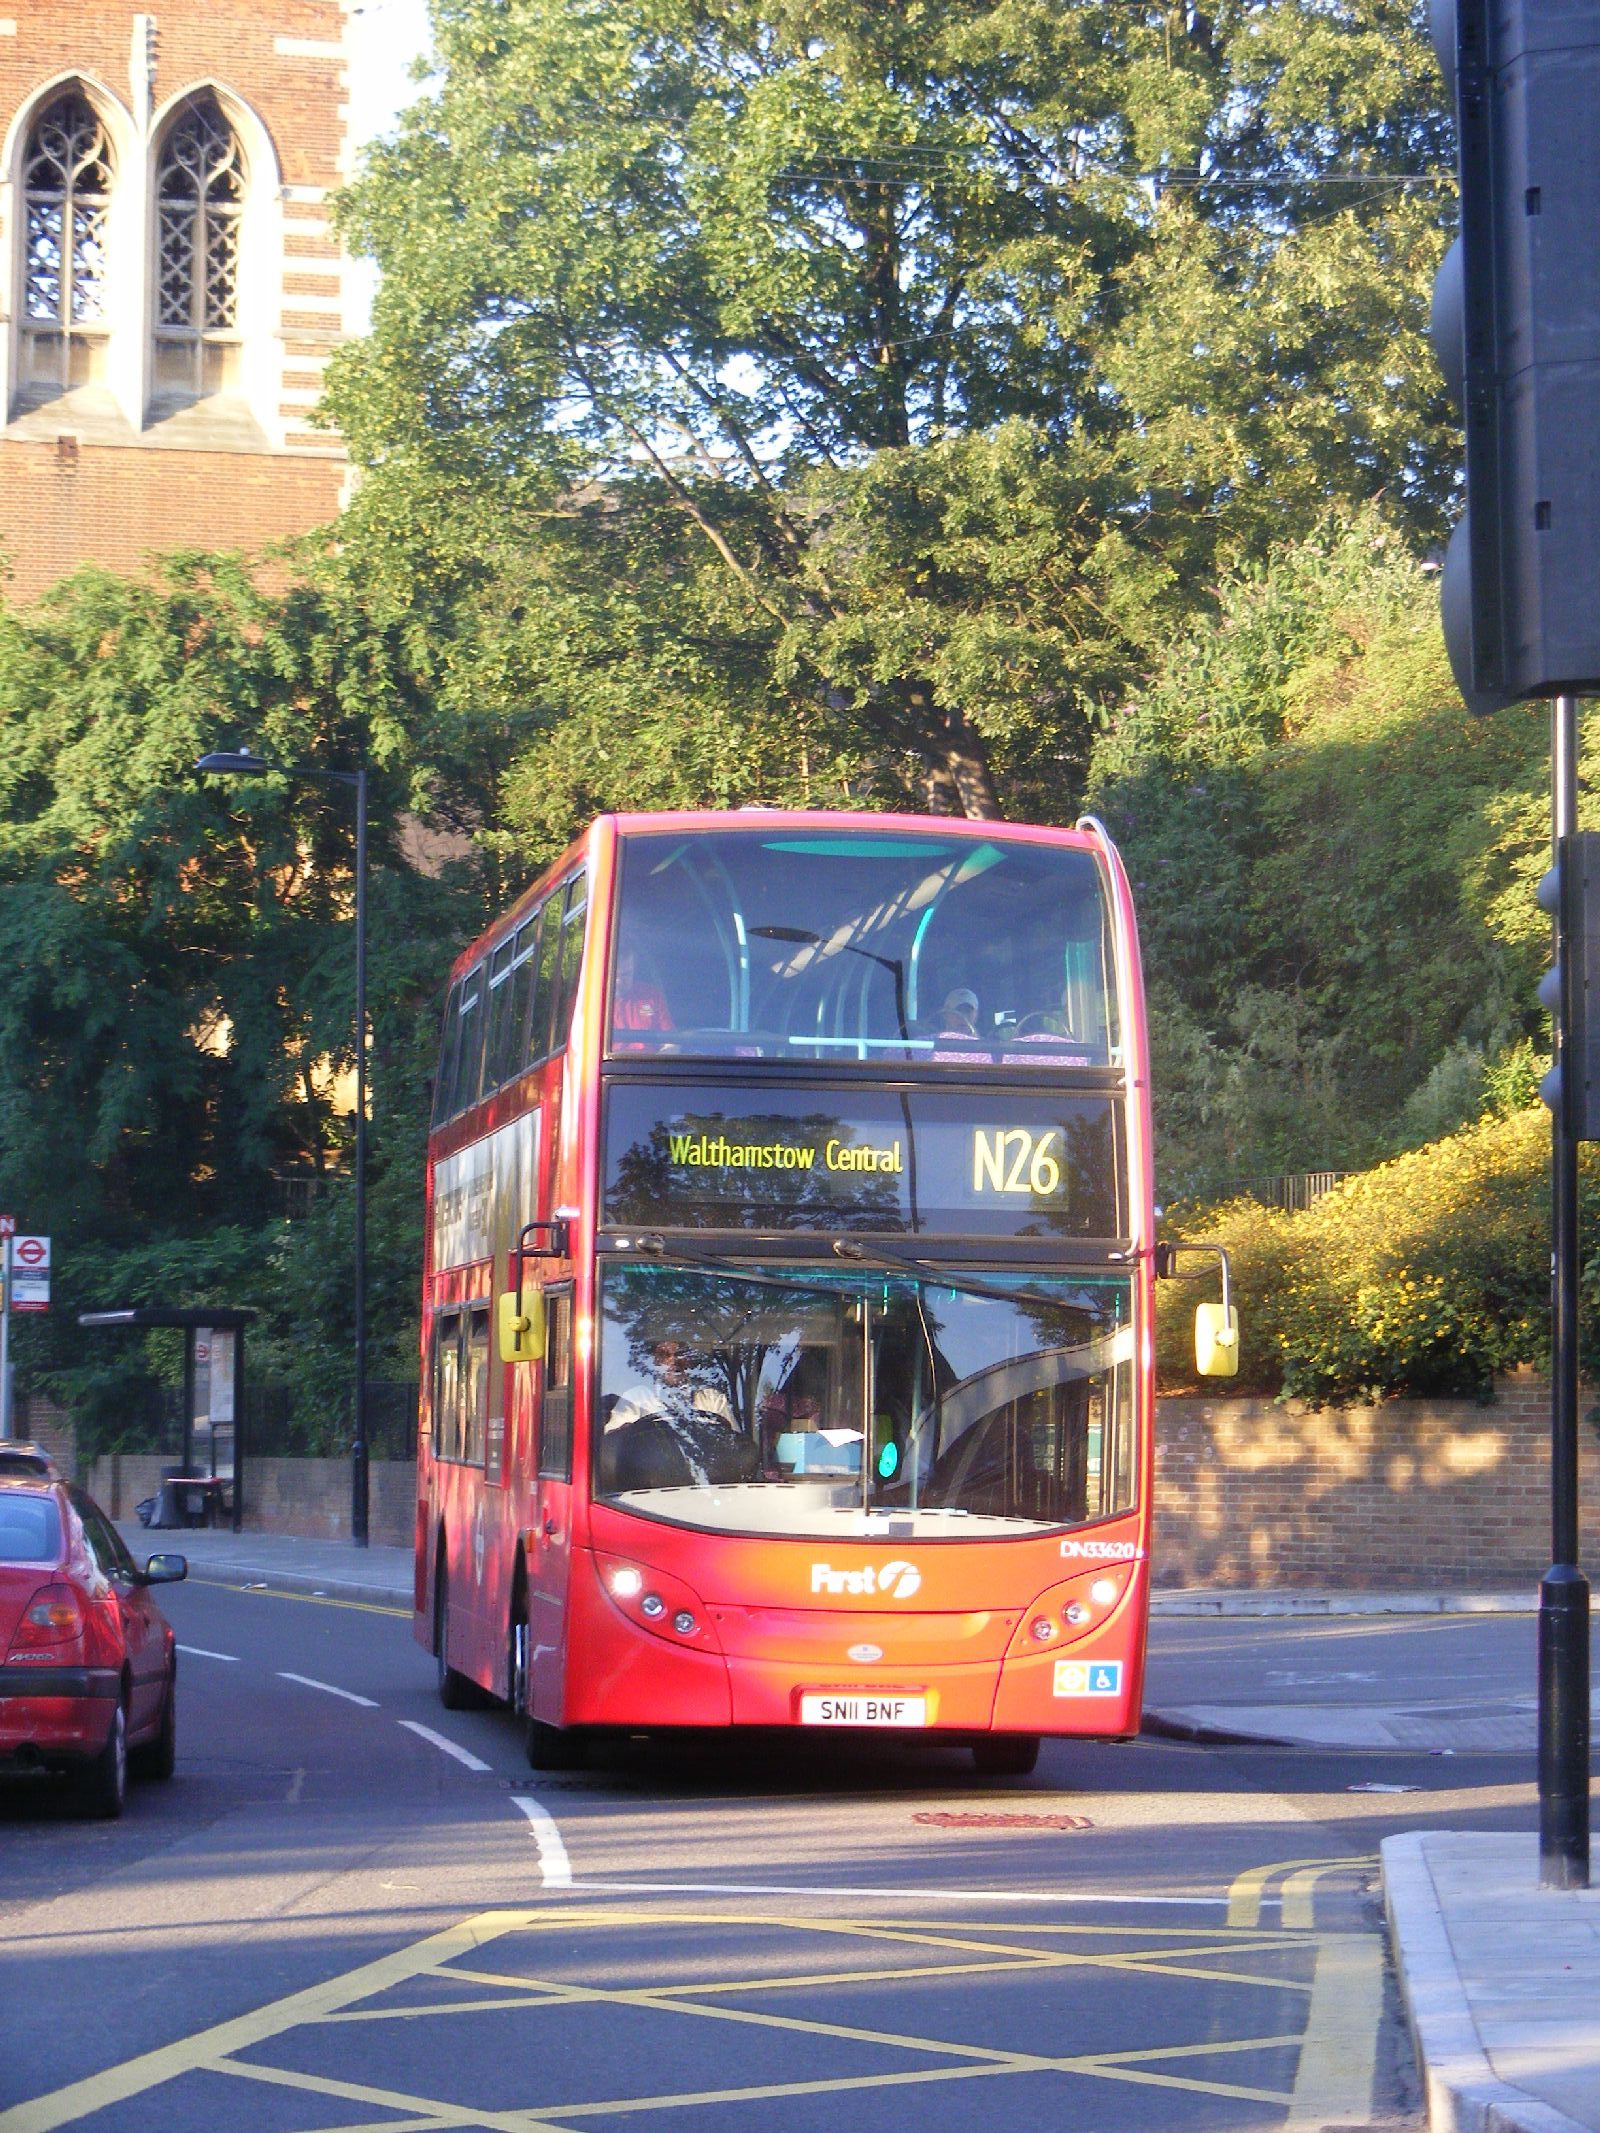 Lit Combiné 2 Couchages Élégant List Of Night Buses In London